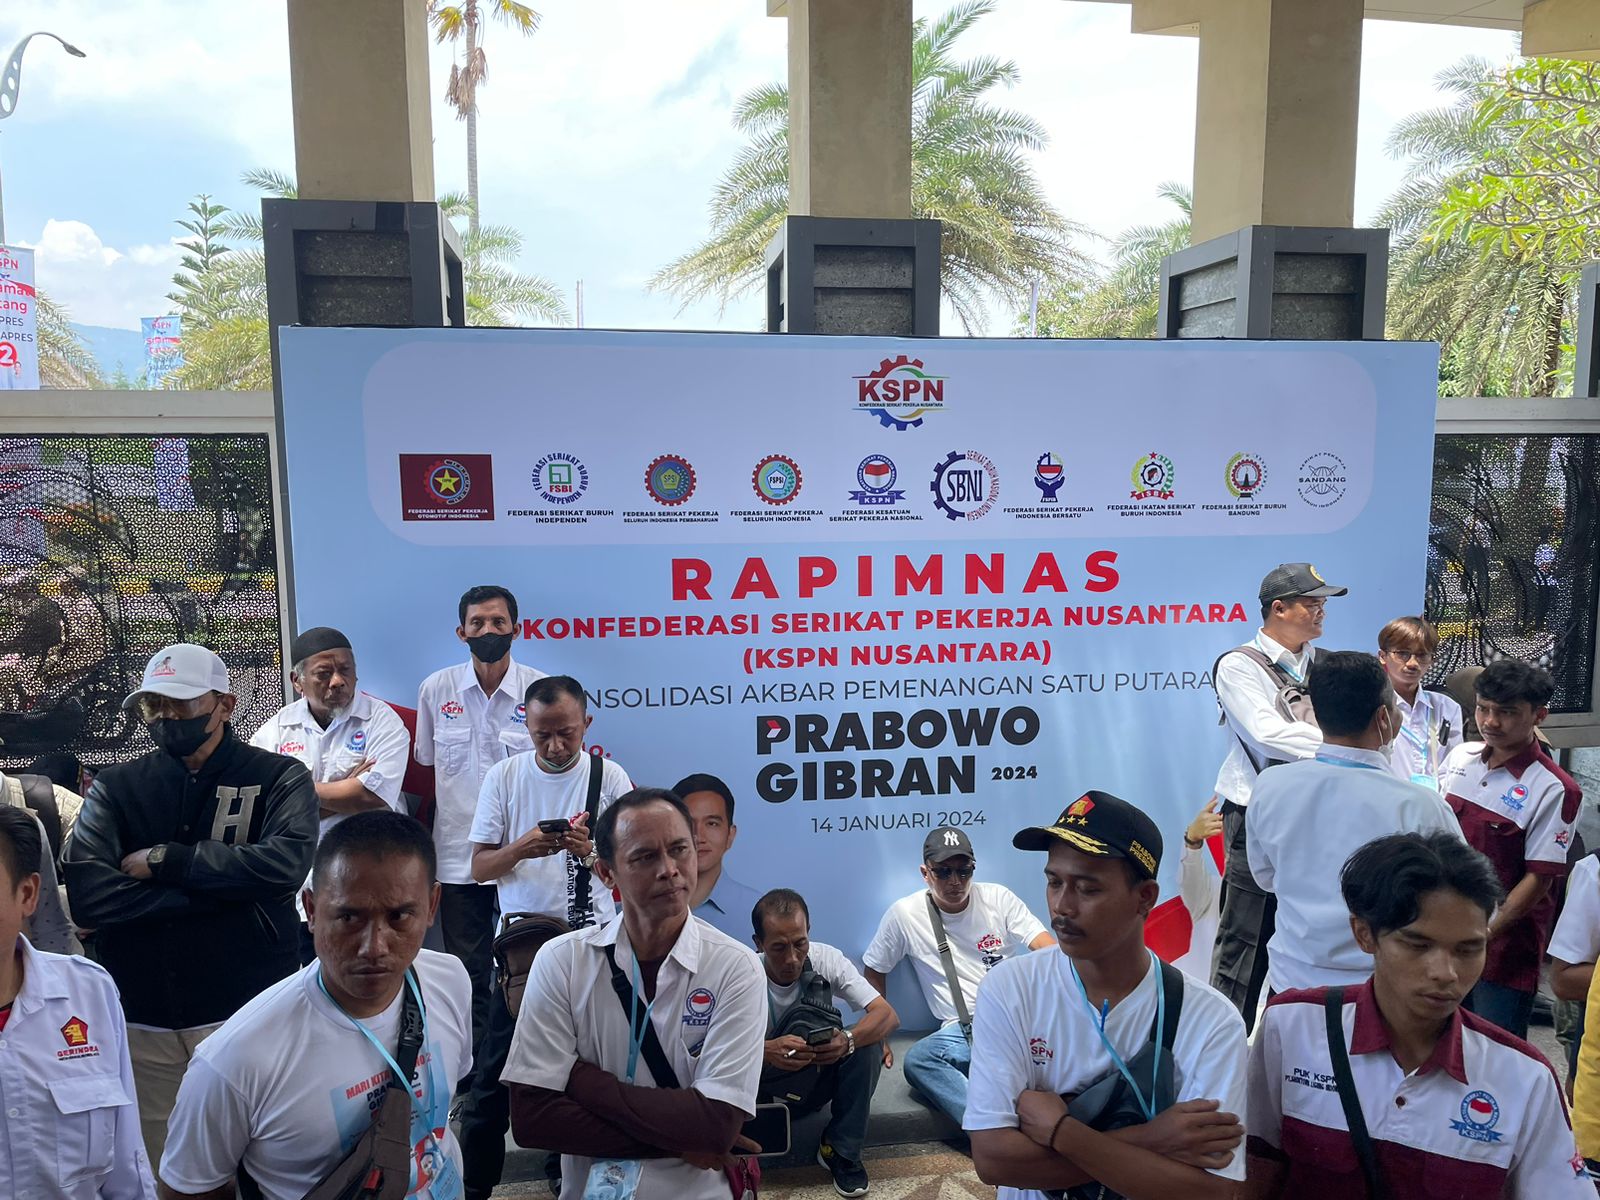 Konfederasi Serikat Pekerja Nusantara Gelar Rapimnas Nyatakan Dukungan ke Prabowo Subianto